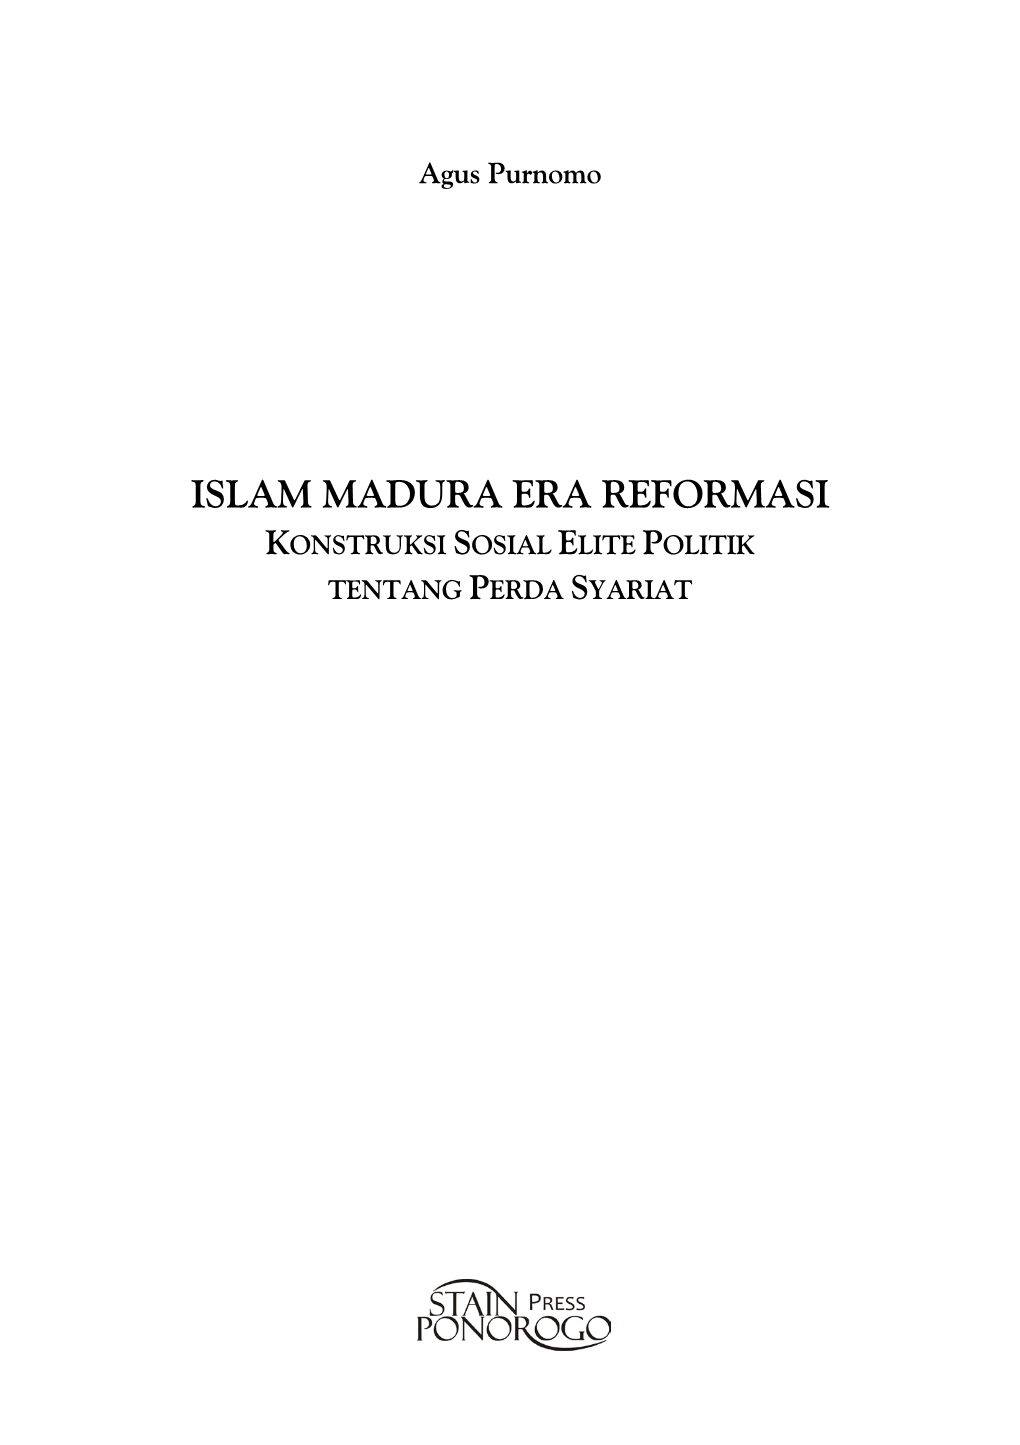 Islam Madura Era Reformasi